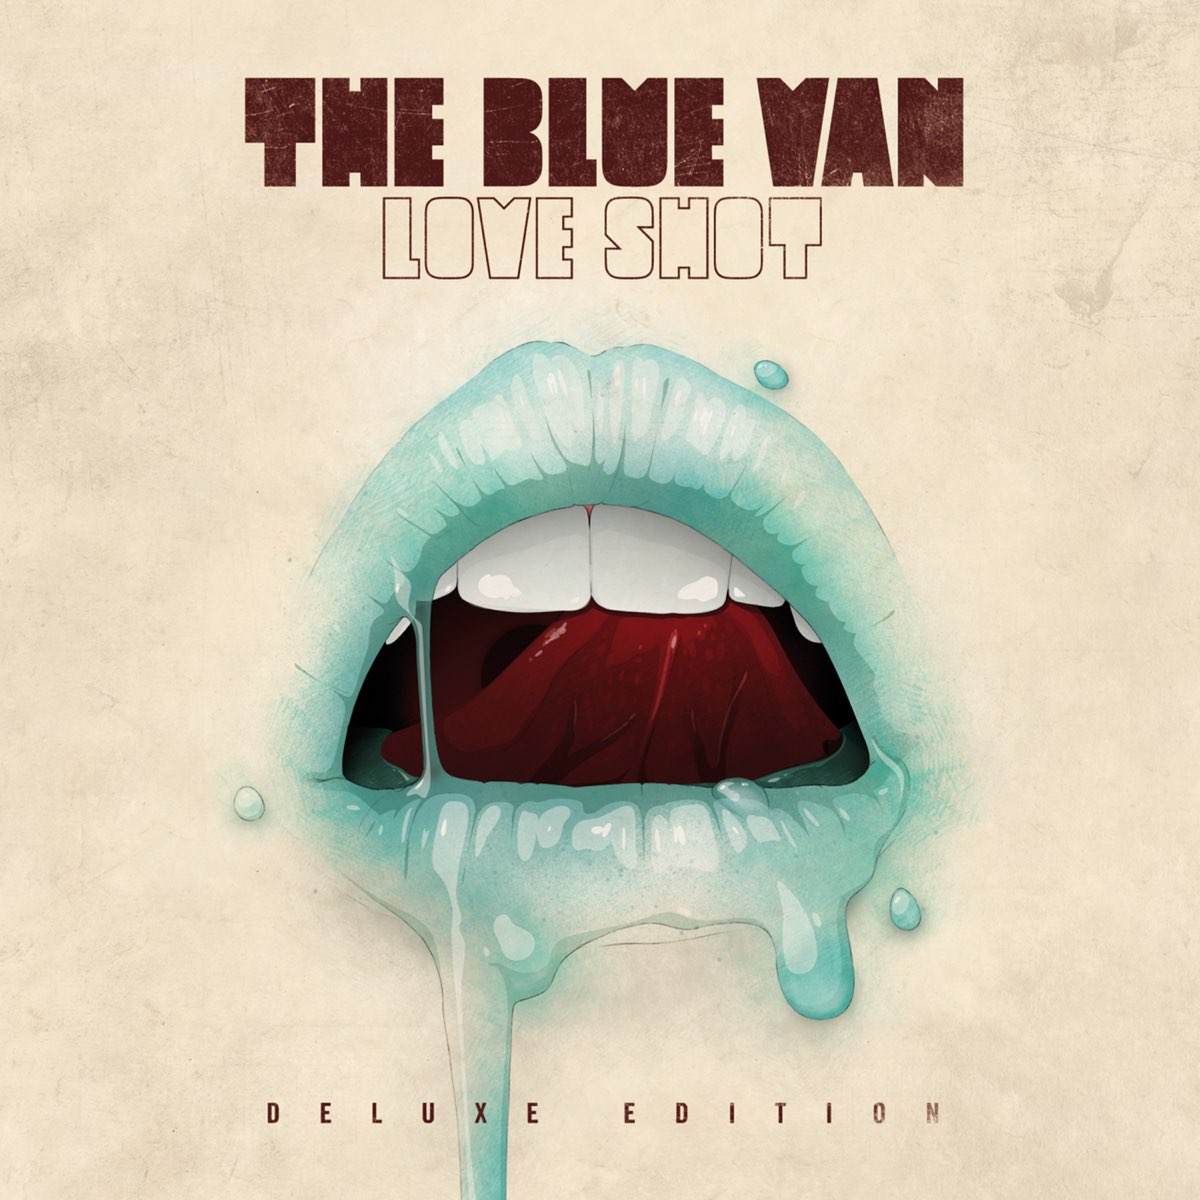 The Blue van Love shot  2010